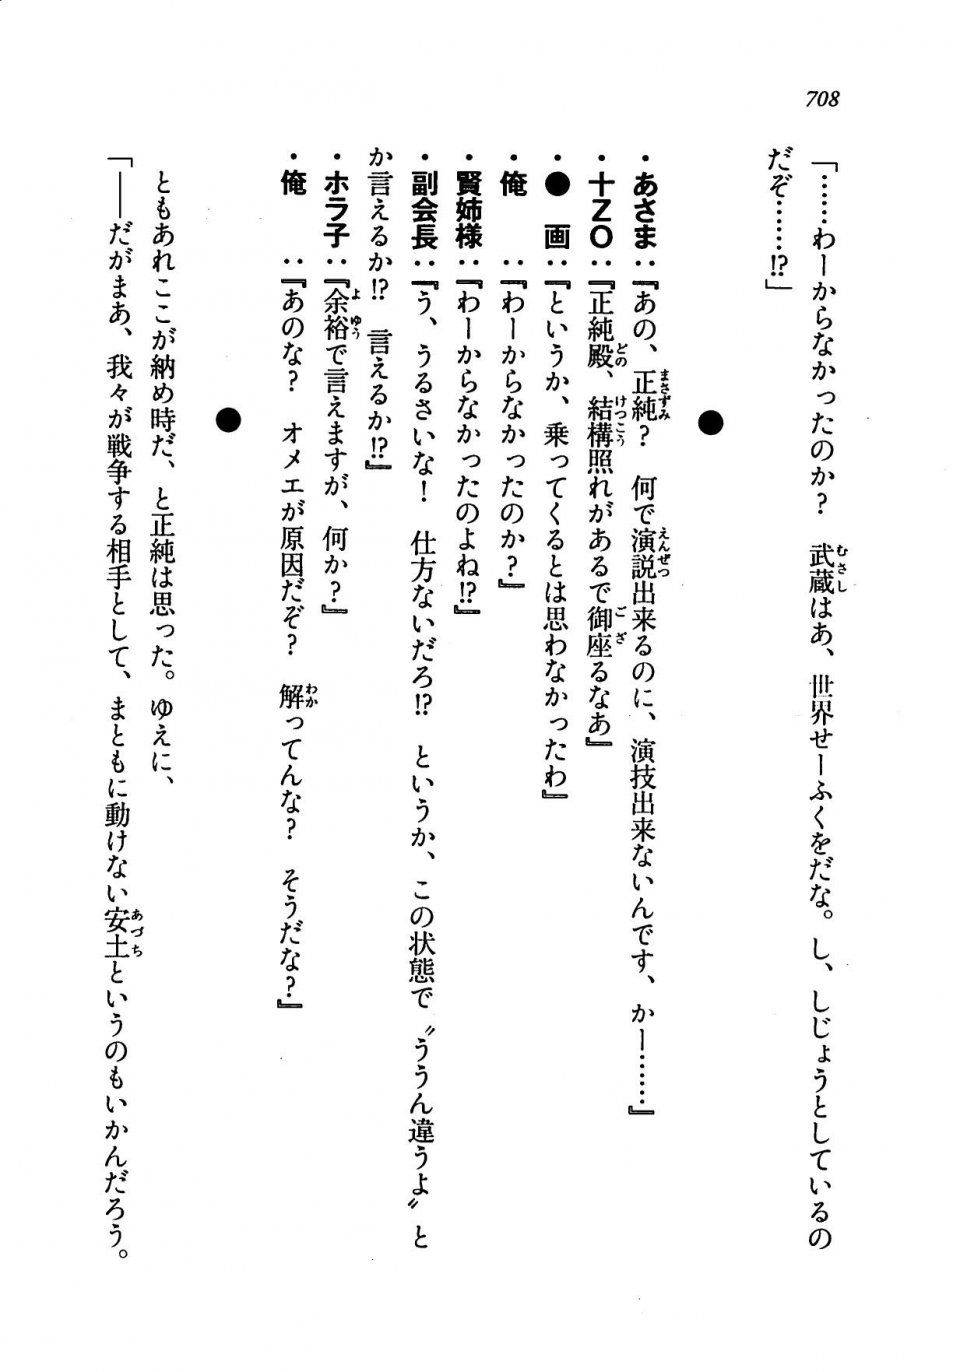 Kyoukai Senjou no Horizon LN Vol 19(8A) - Photo #708